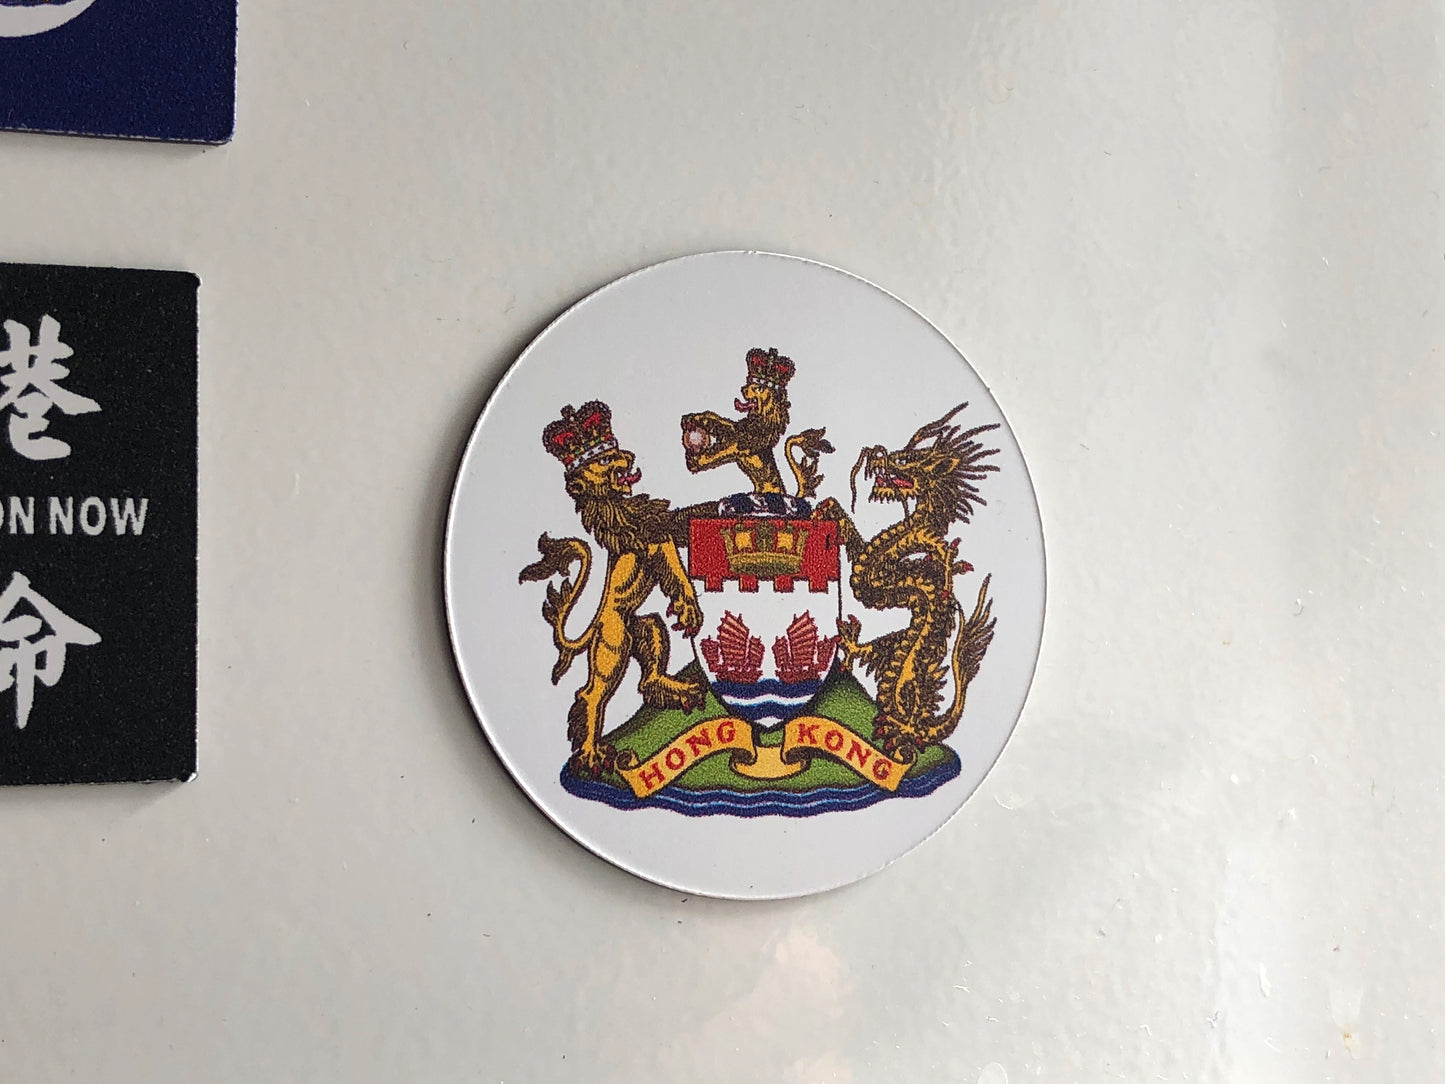 香港徽號 / 香港紋章 磁石 Coat of Arms of Hong Kong Magnet 🇬🇧 Made in Britain